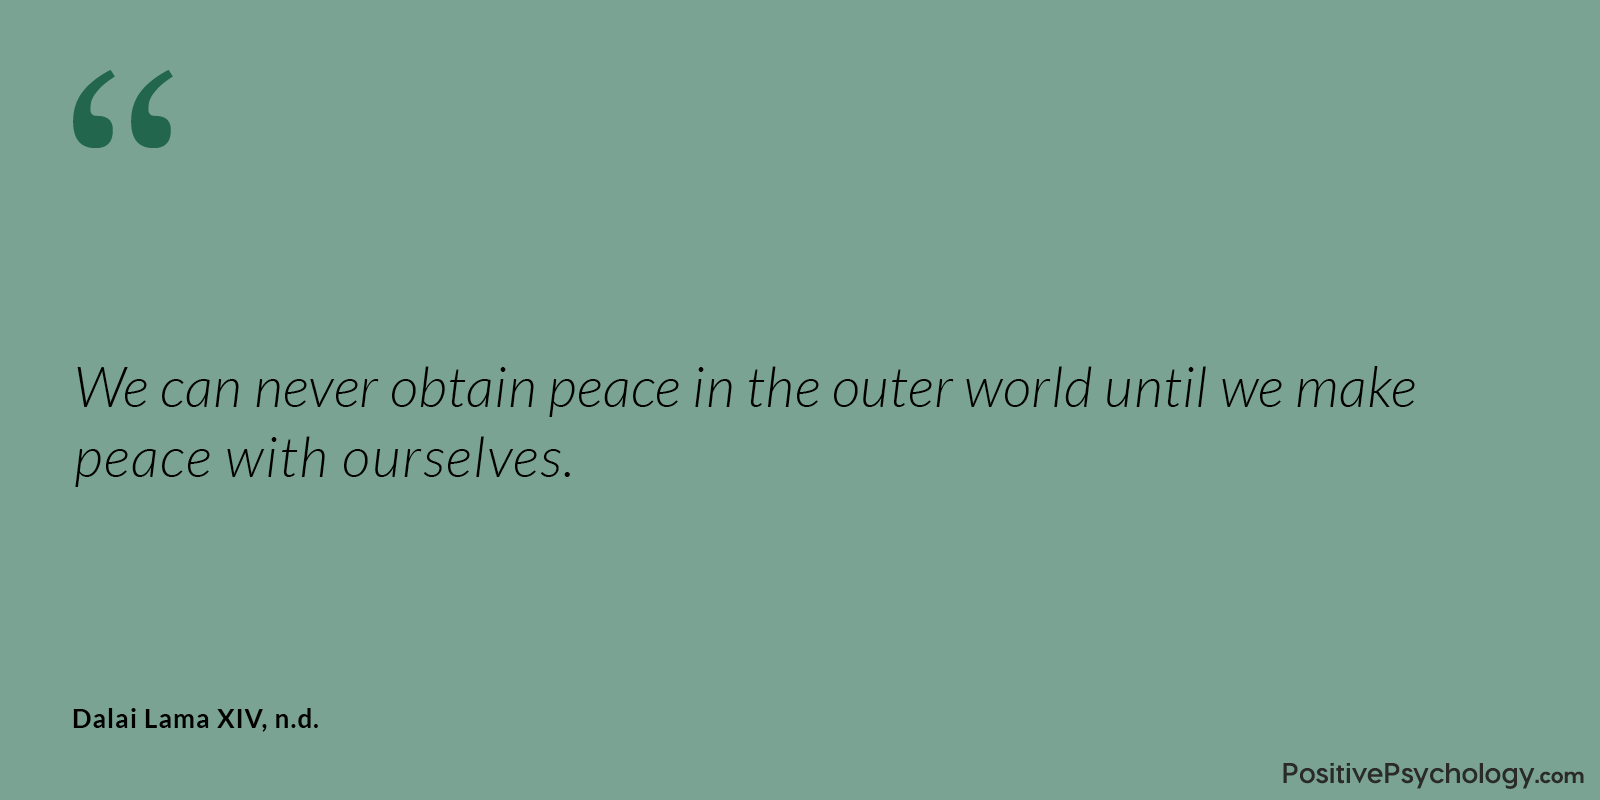 Obtain Peace